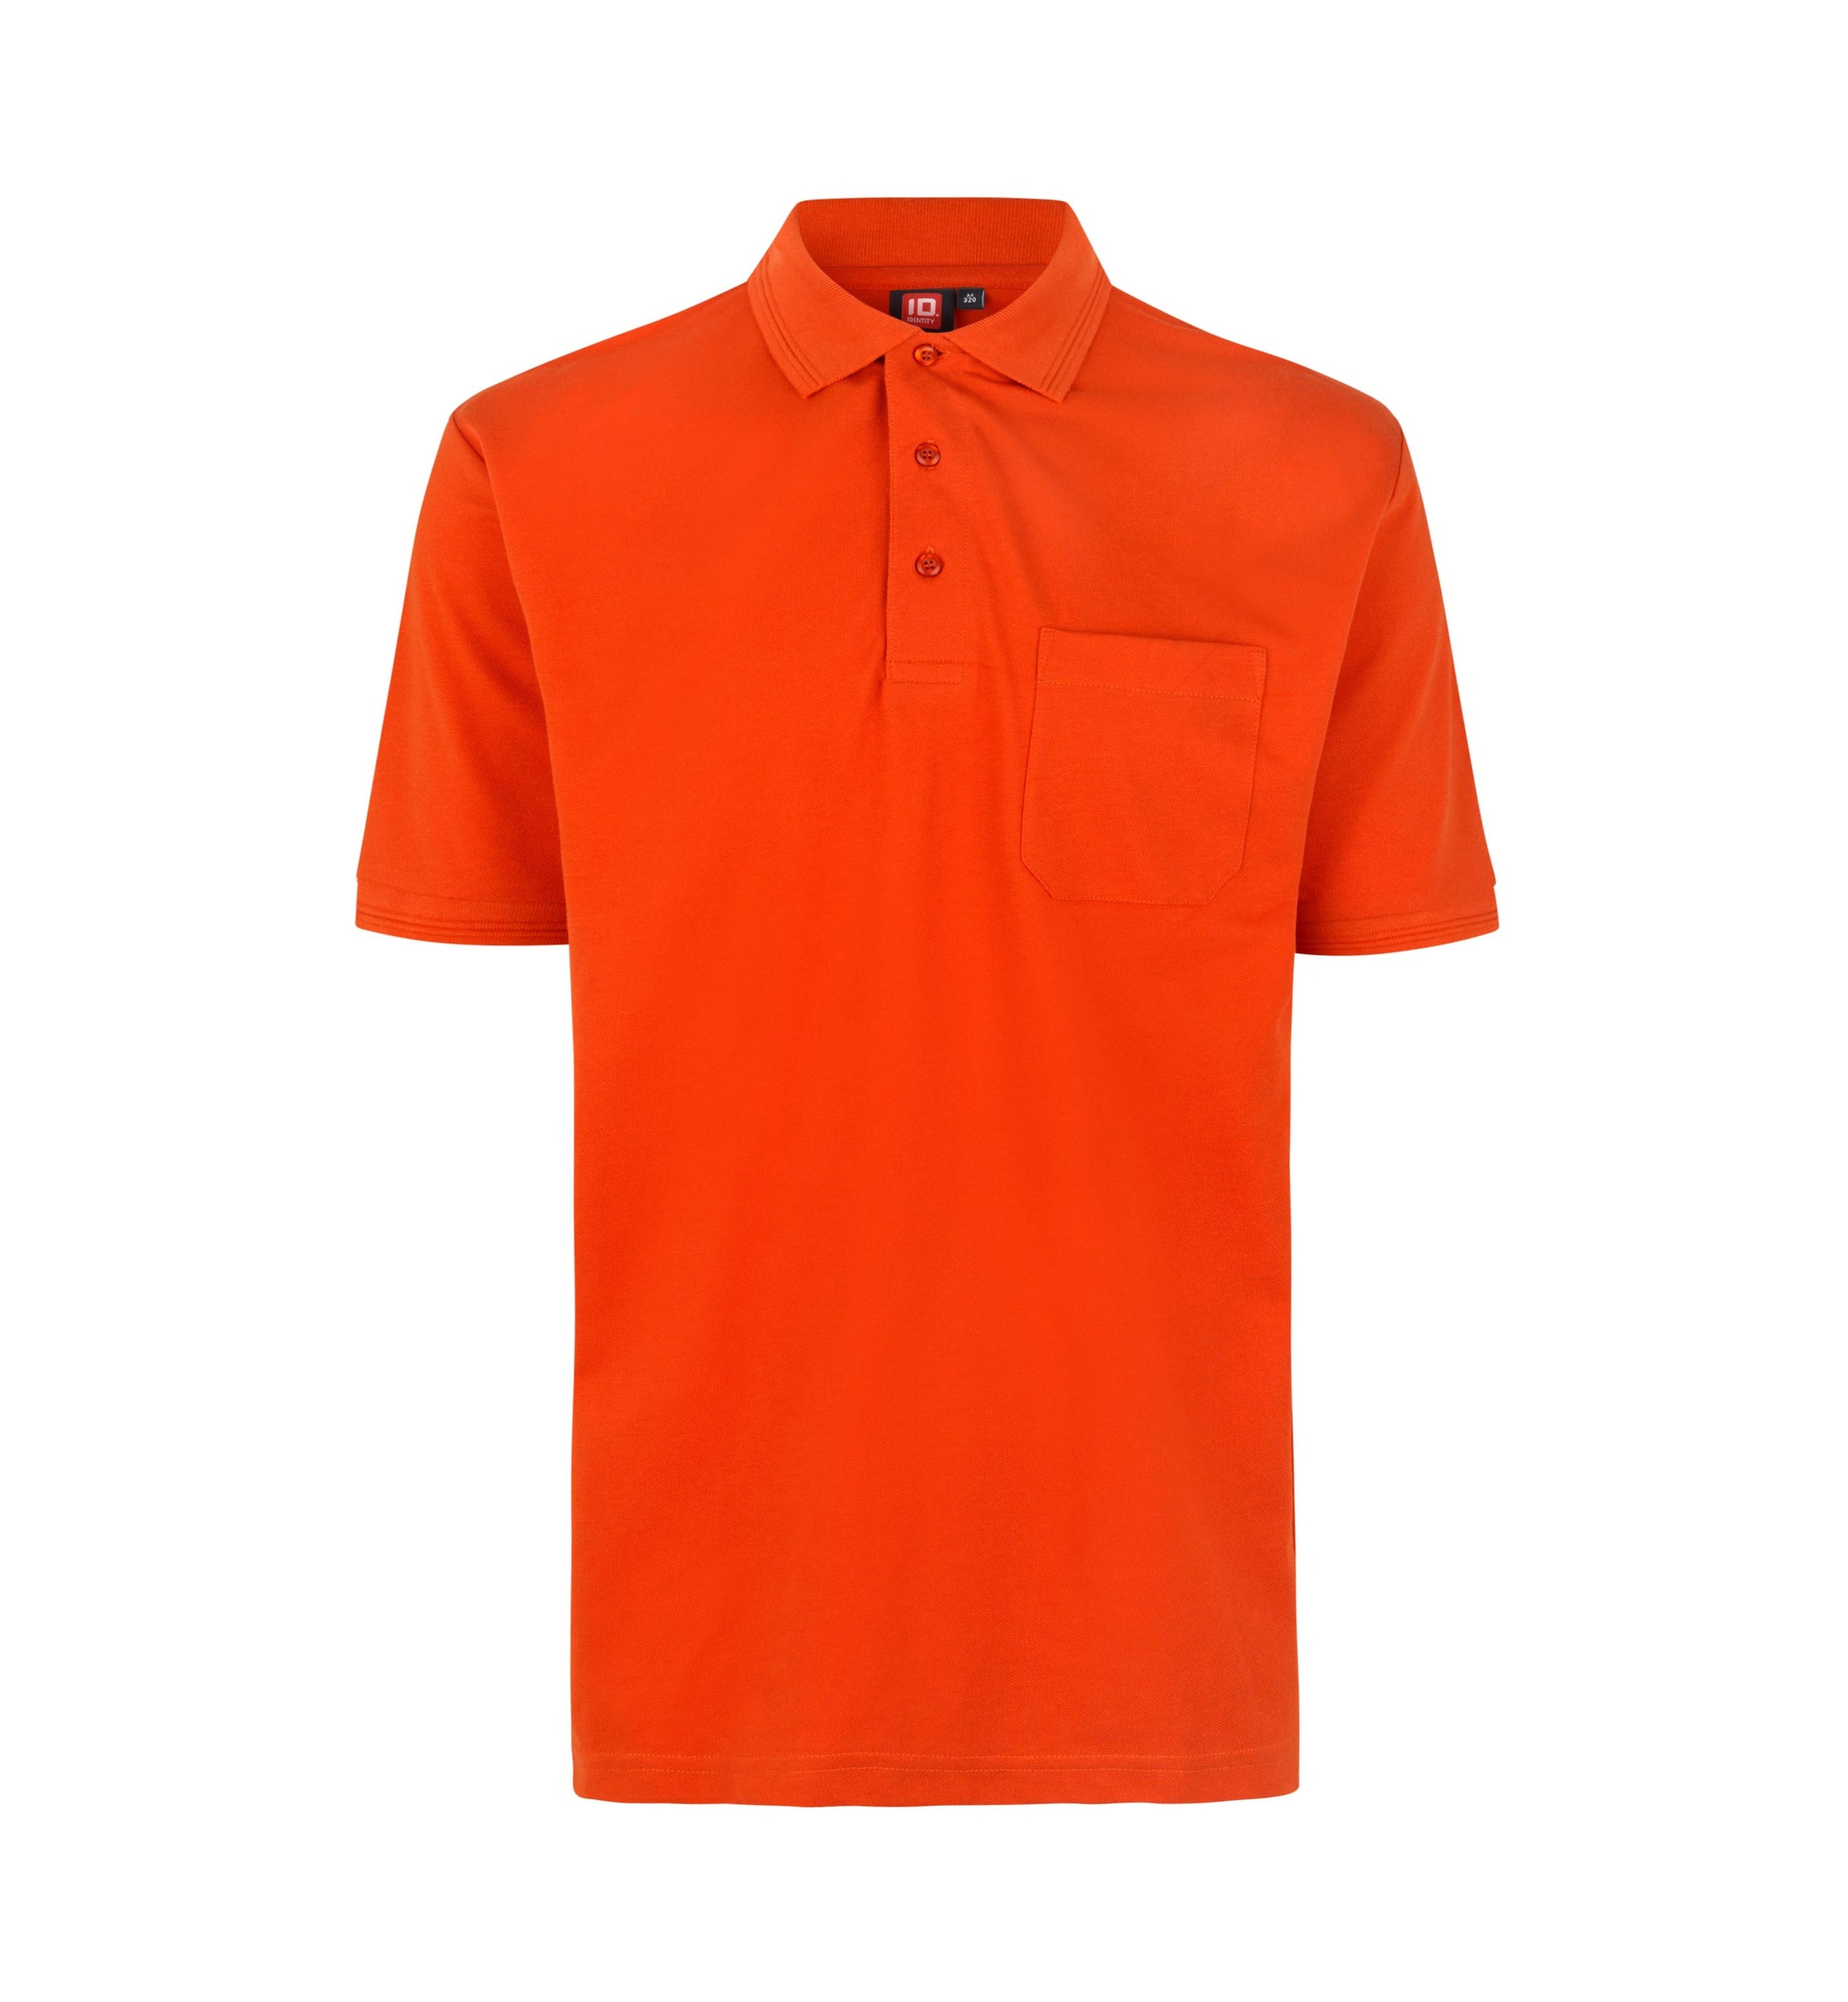 Поло PRO Wear by ID Polo Shirt brusttasche, оранжевый